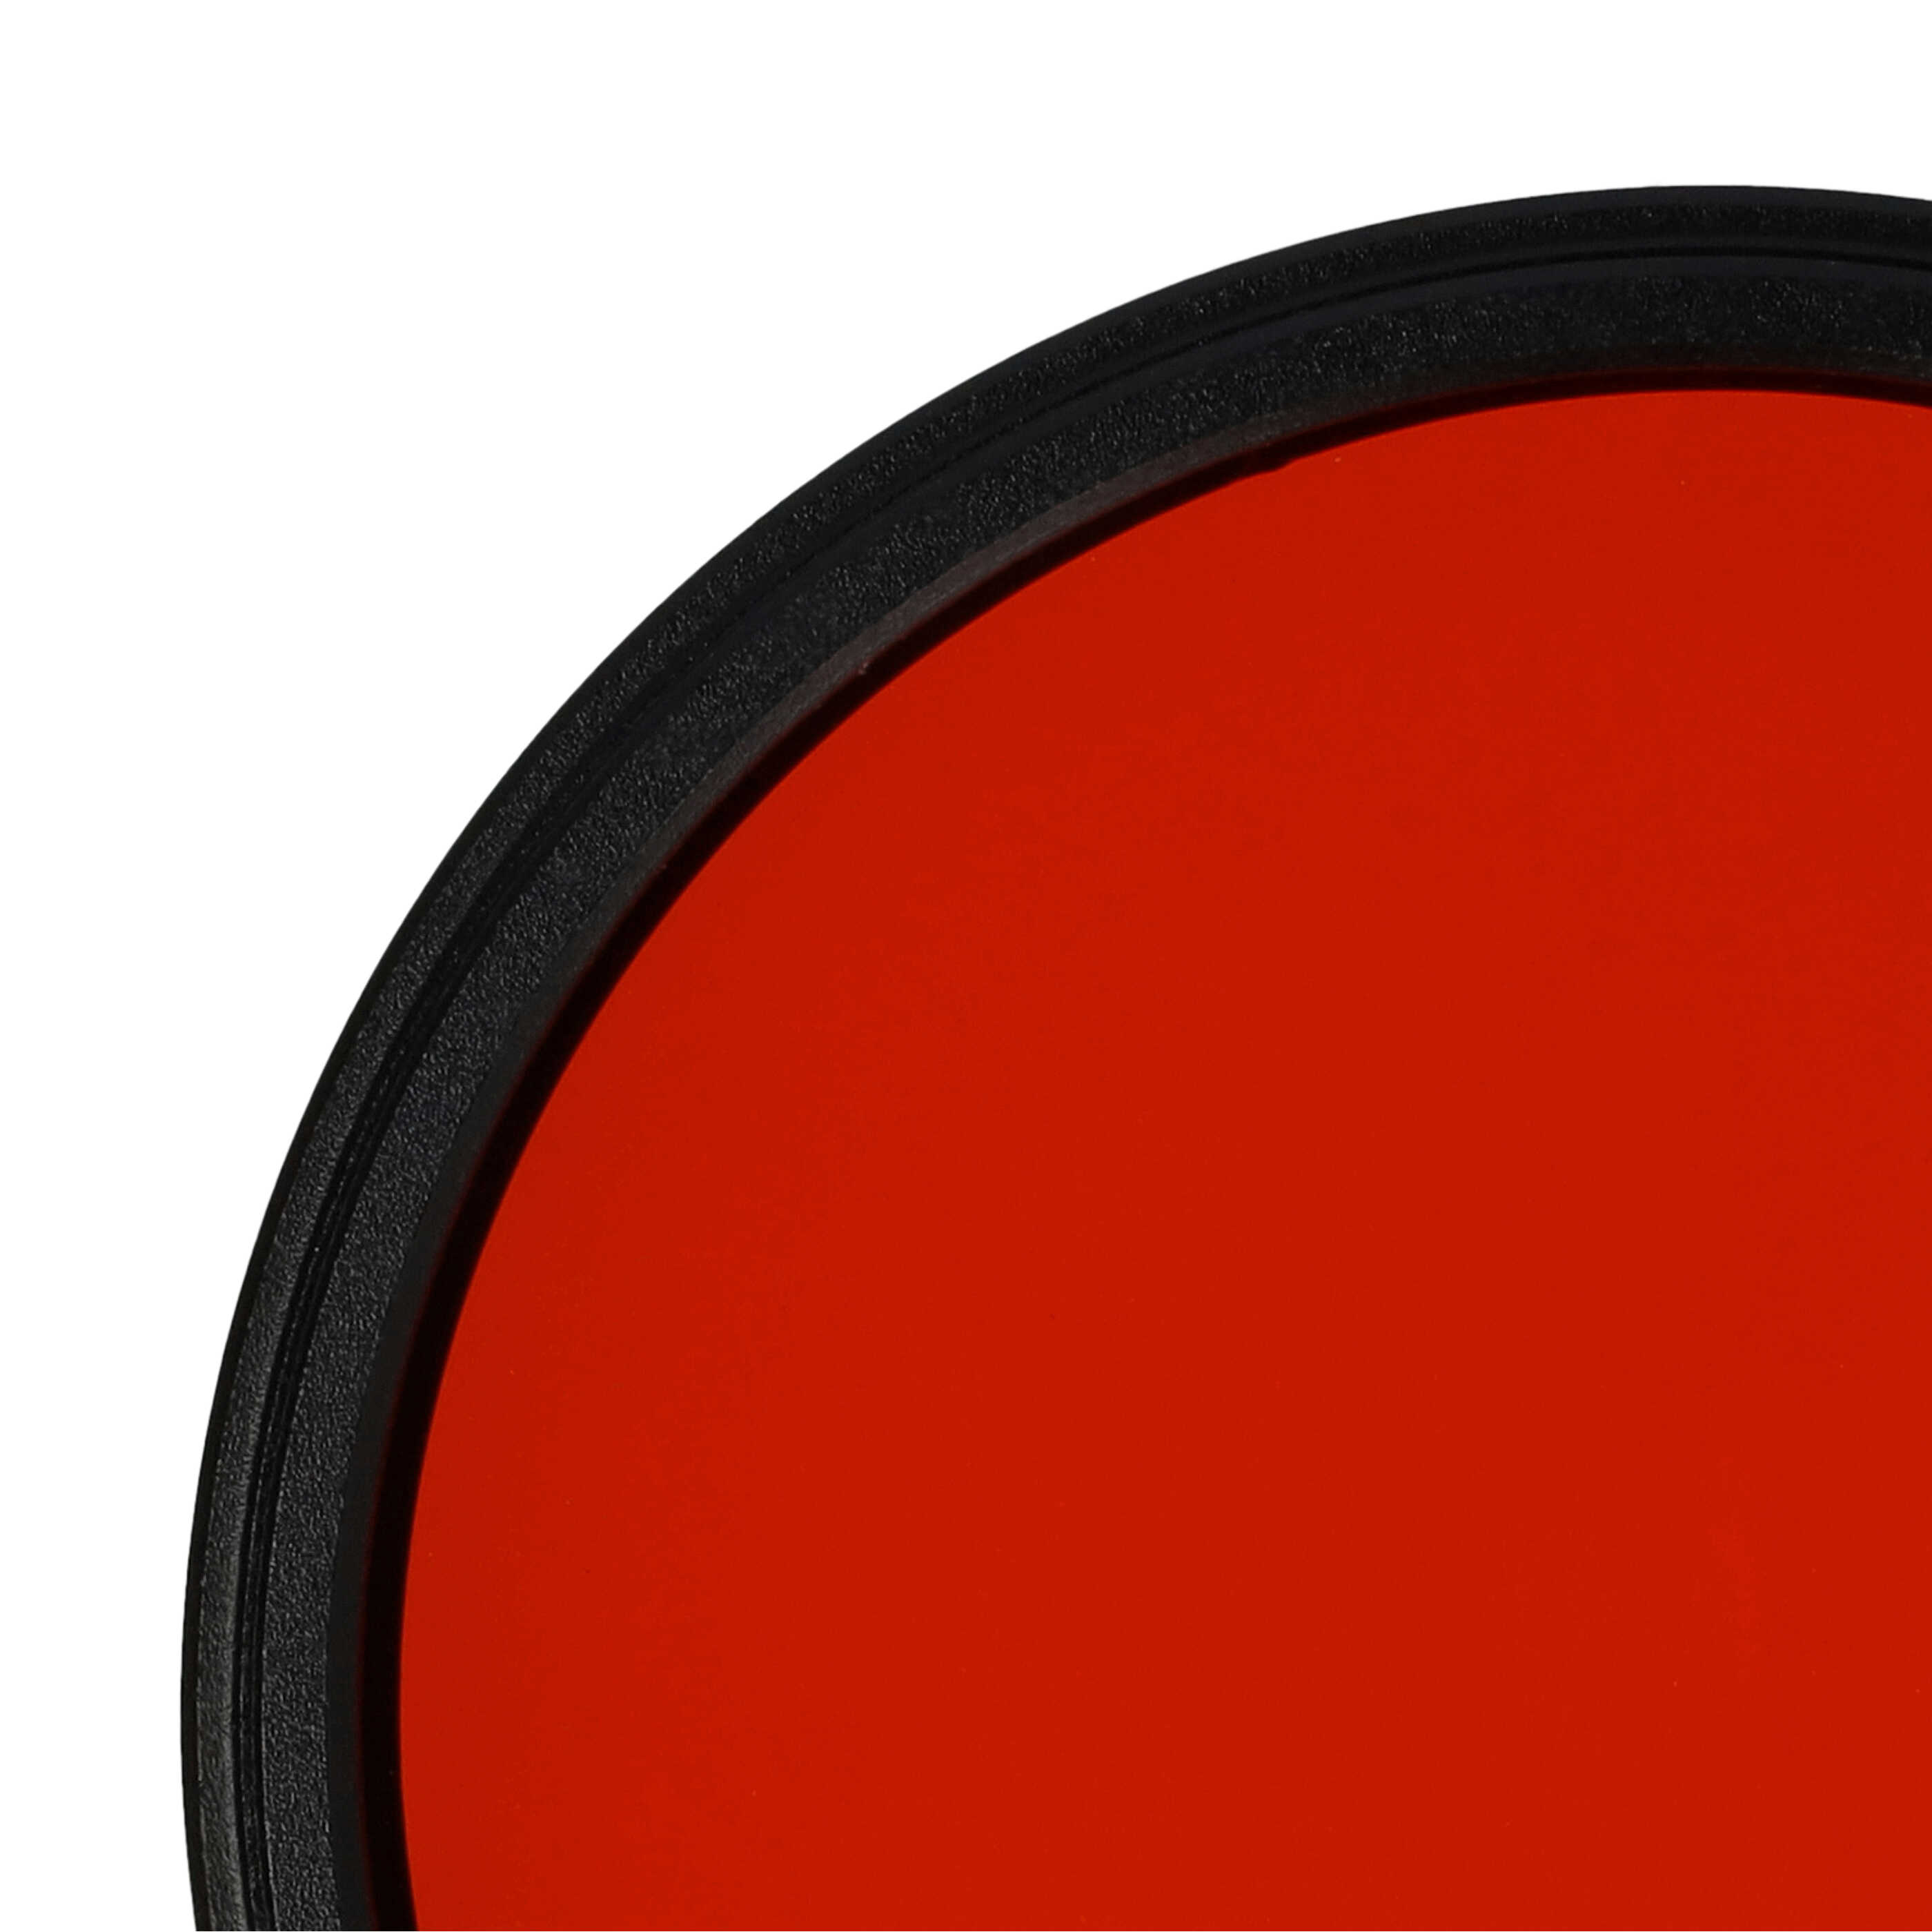 Farbfilter orange passend für Kamera Objektive mit 58 mm Filtergewinde - Orangefilter